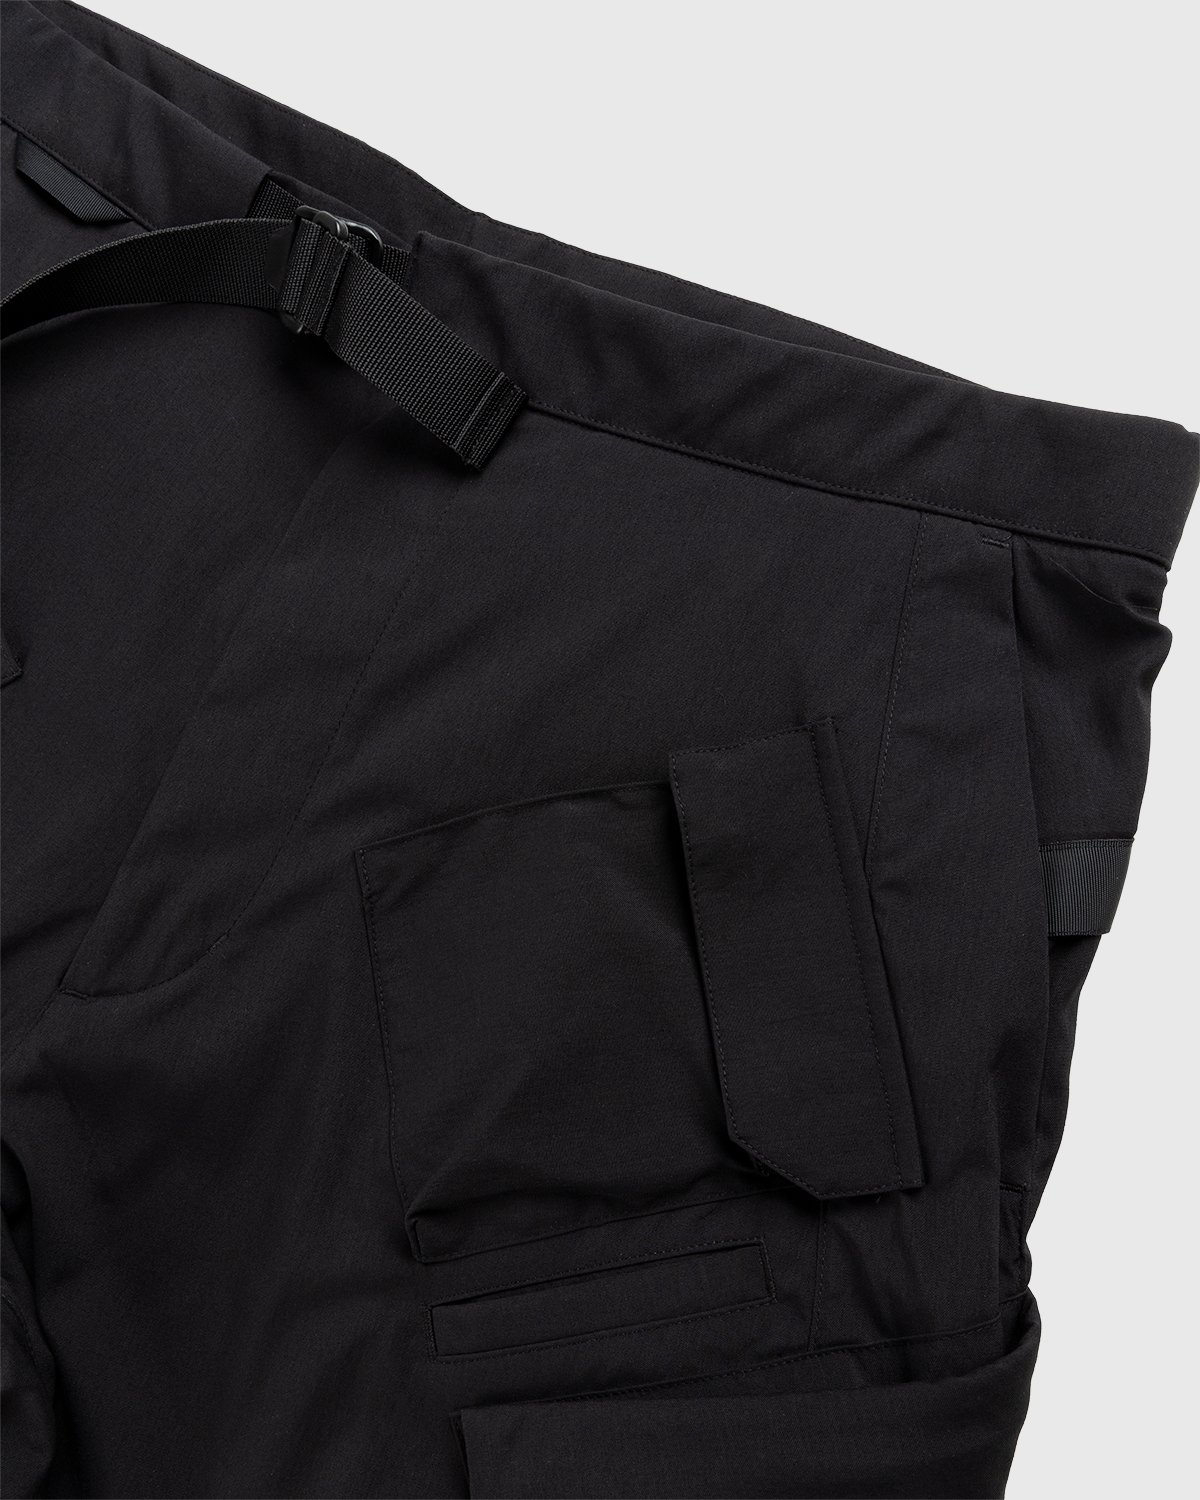 ACRONYM - SP29-M Cargo Shorts Black - Clothing - Black - Image 4